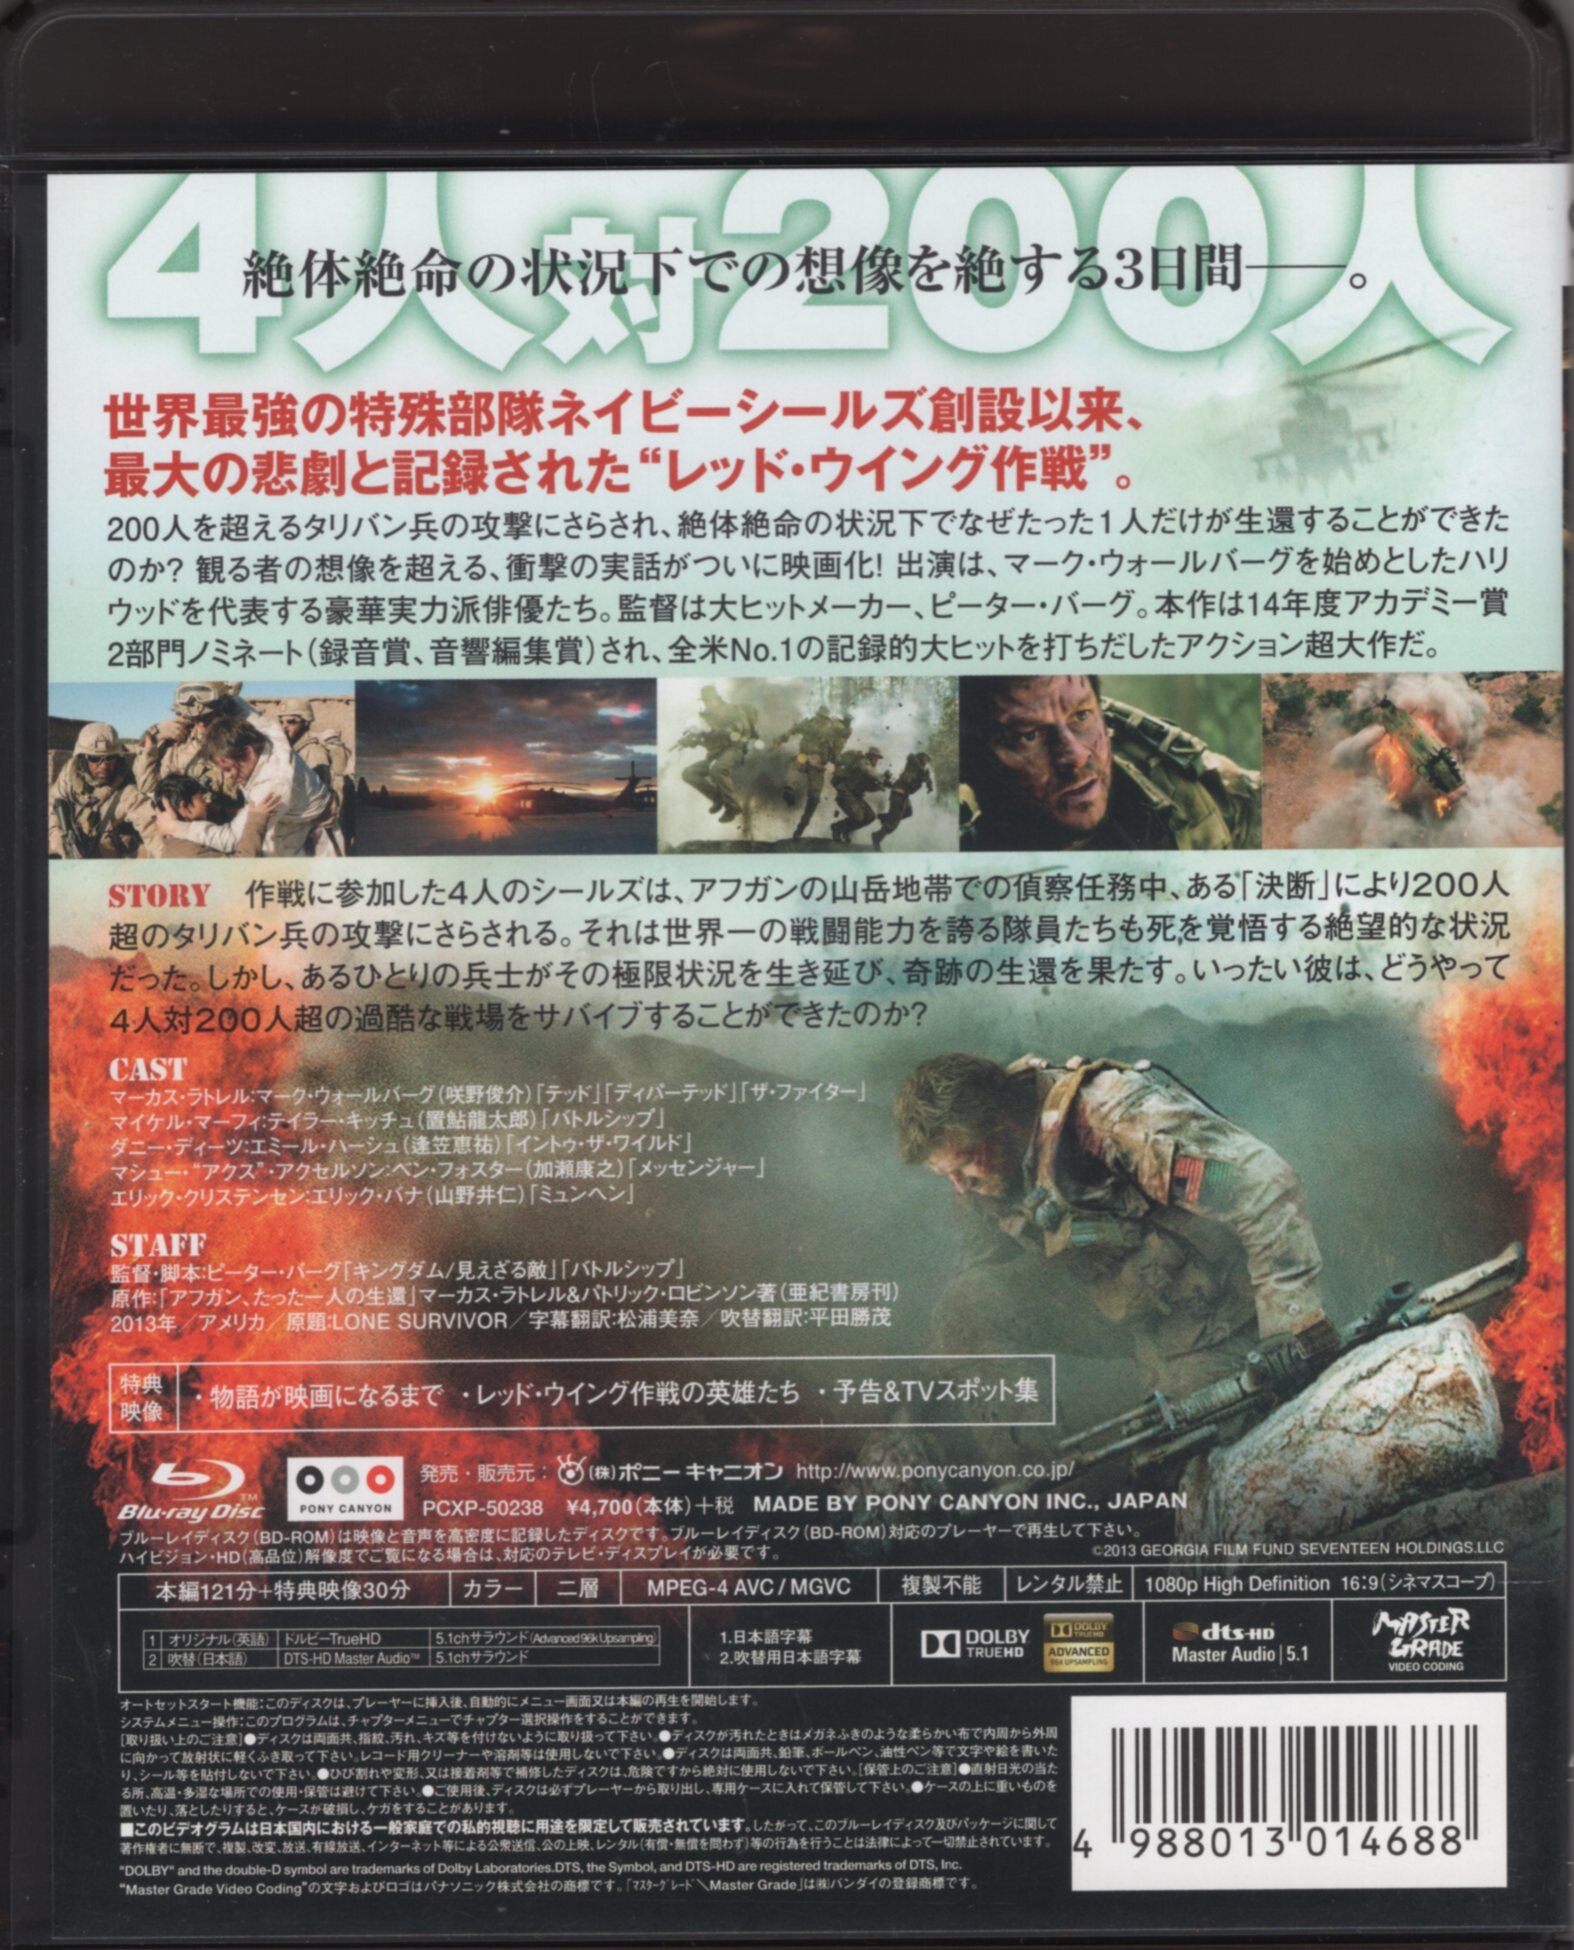 Foreign movie Blu-ray Lone Survivor